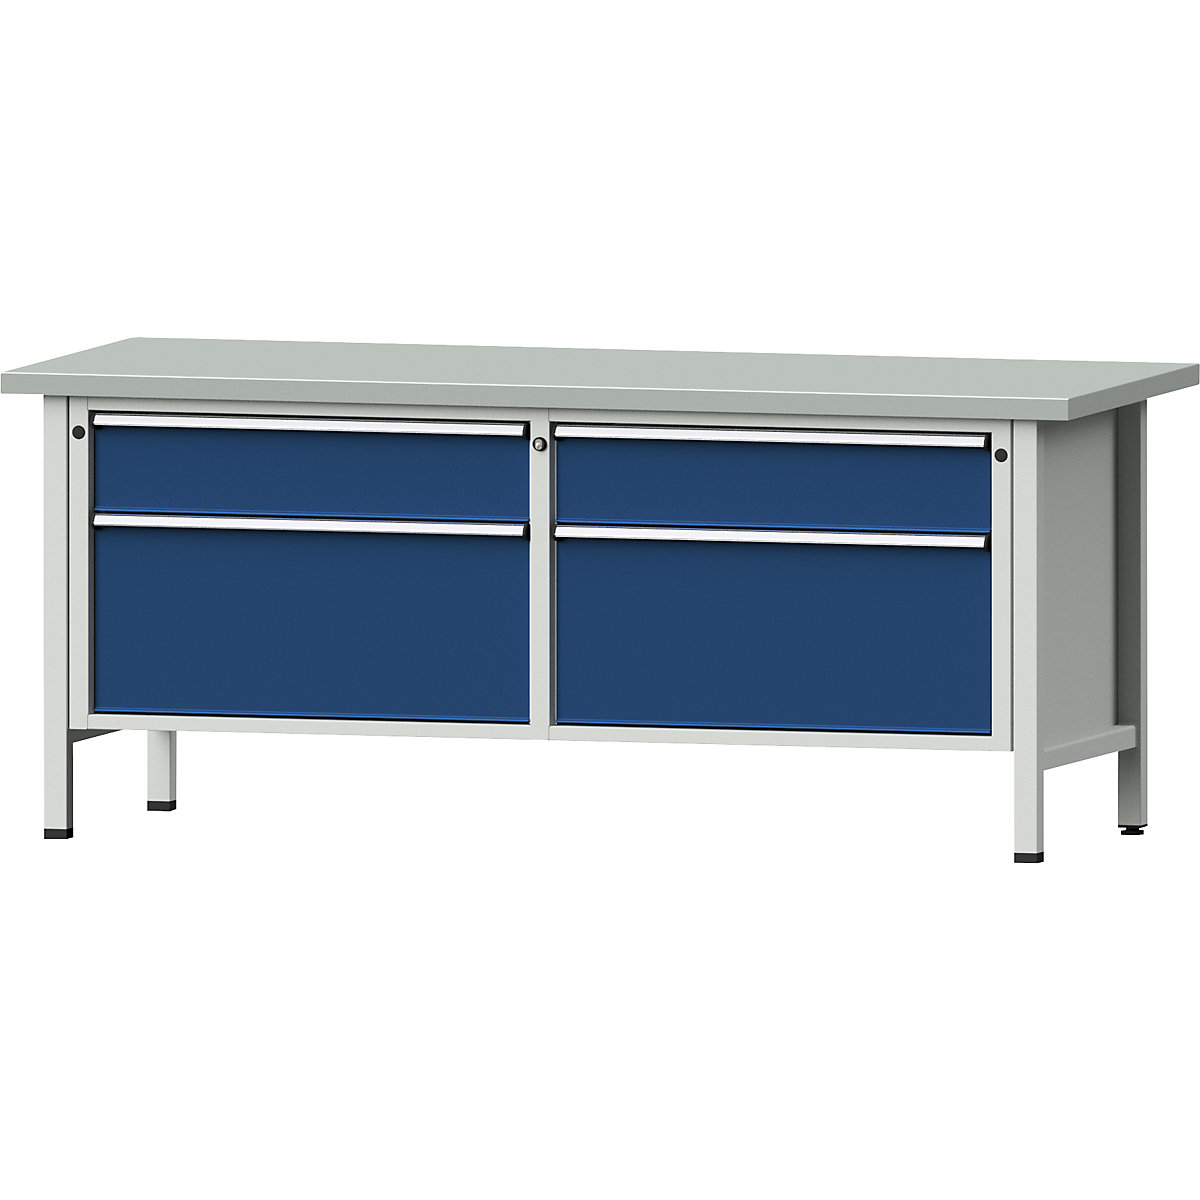 Établi avec tiroirs XL/XXL, sur piétement – ANKE, largeur 2000 mm, 4 tiroirs, plateau à revêtement en tôle d'acier, façade bleu gentiane-8